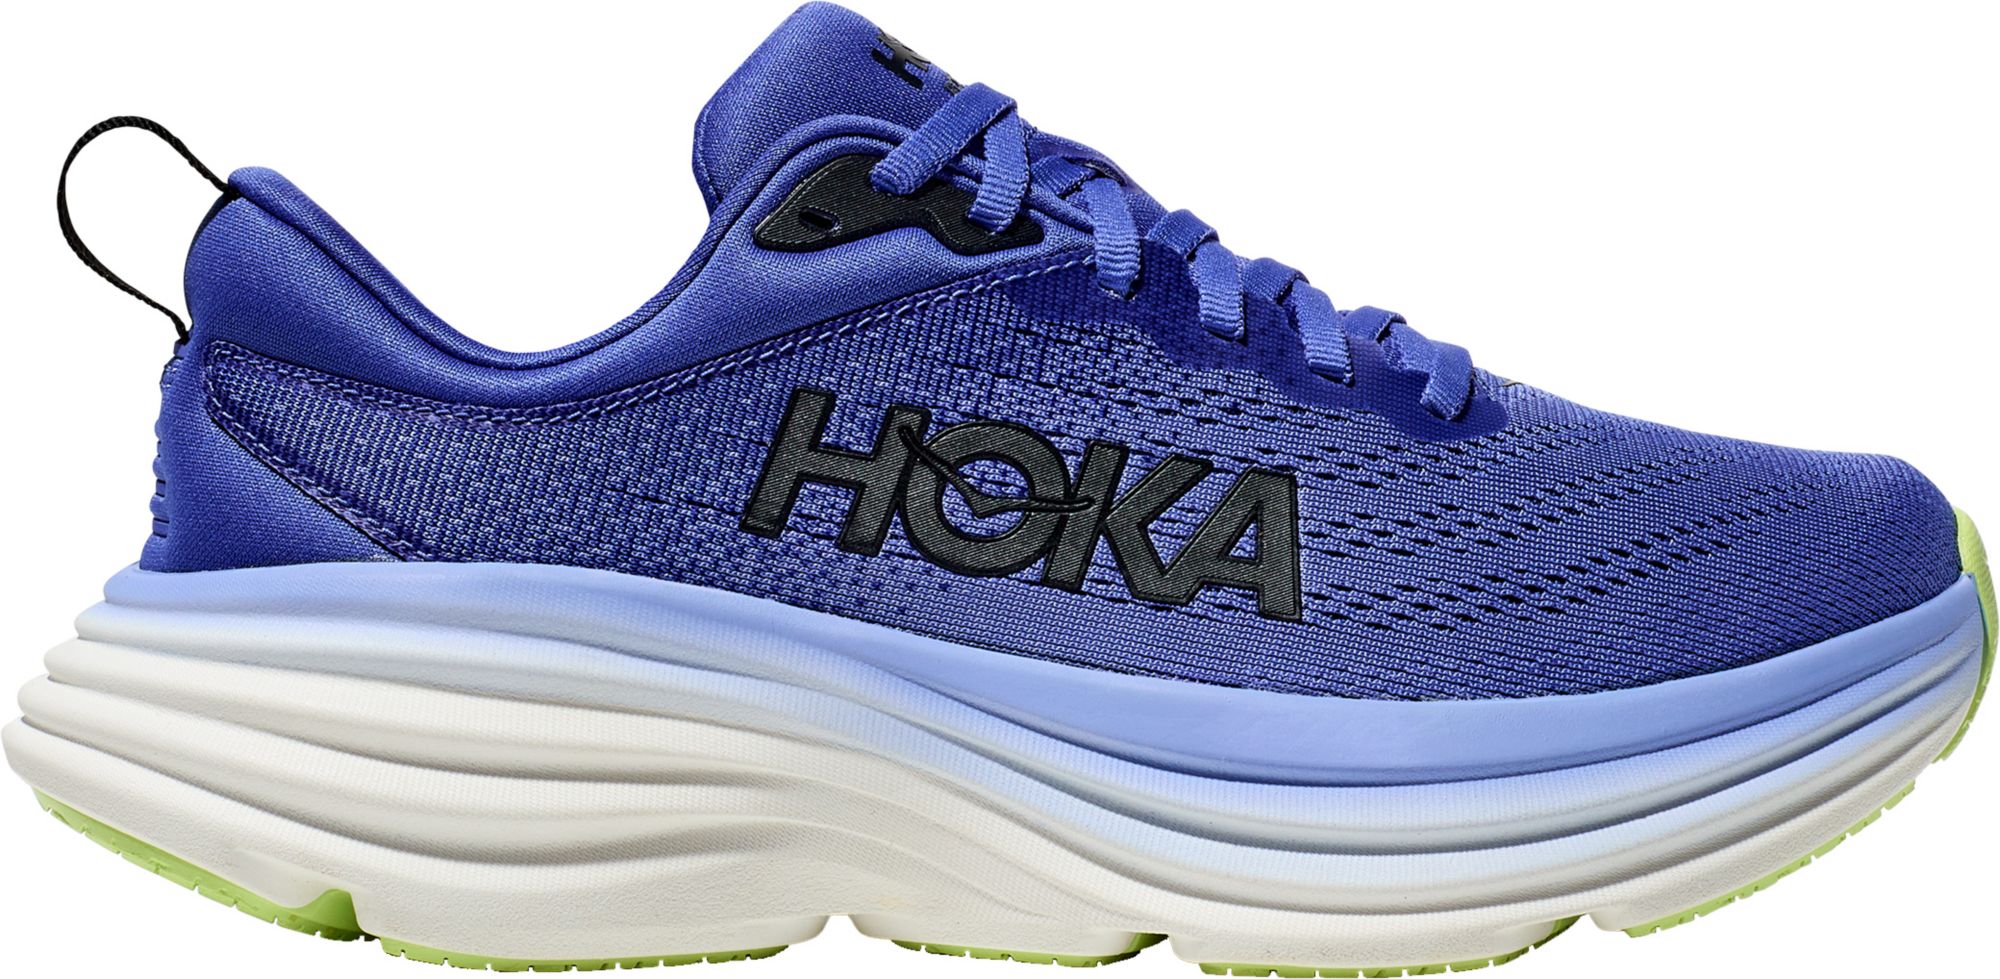 HOKA Women's Bondi 8 Running Shoes